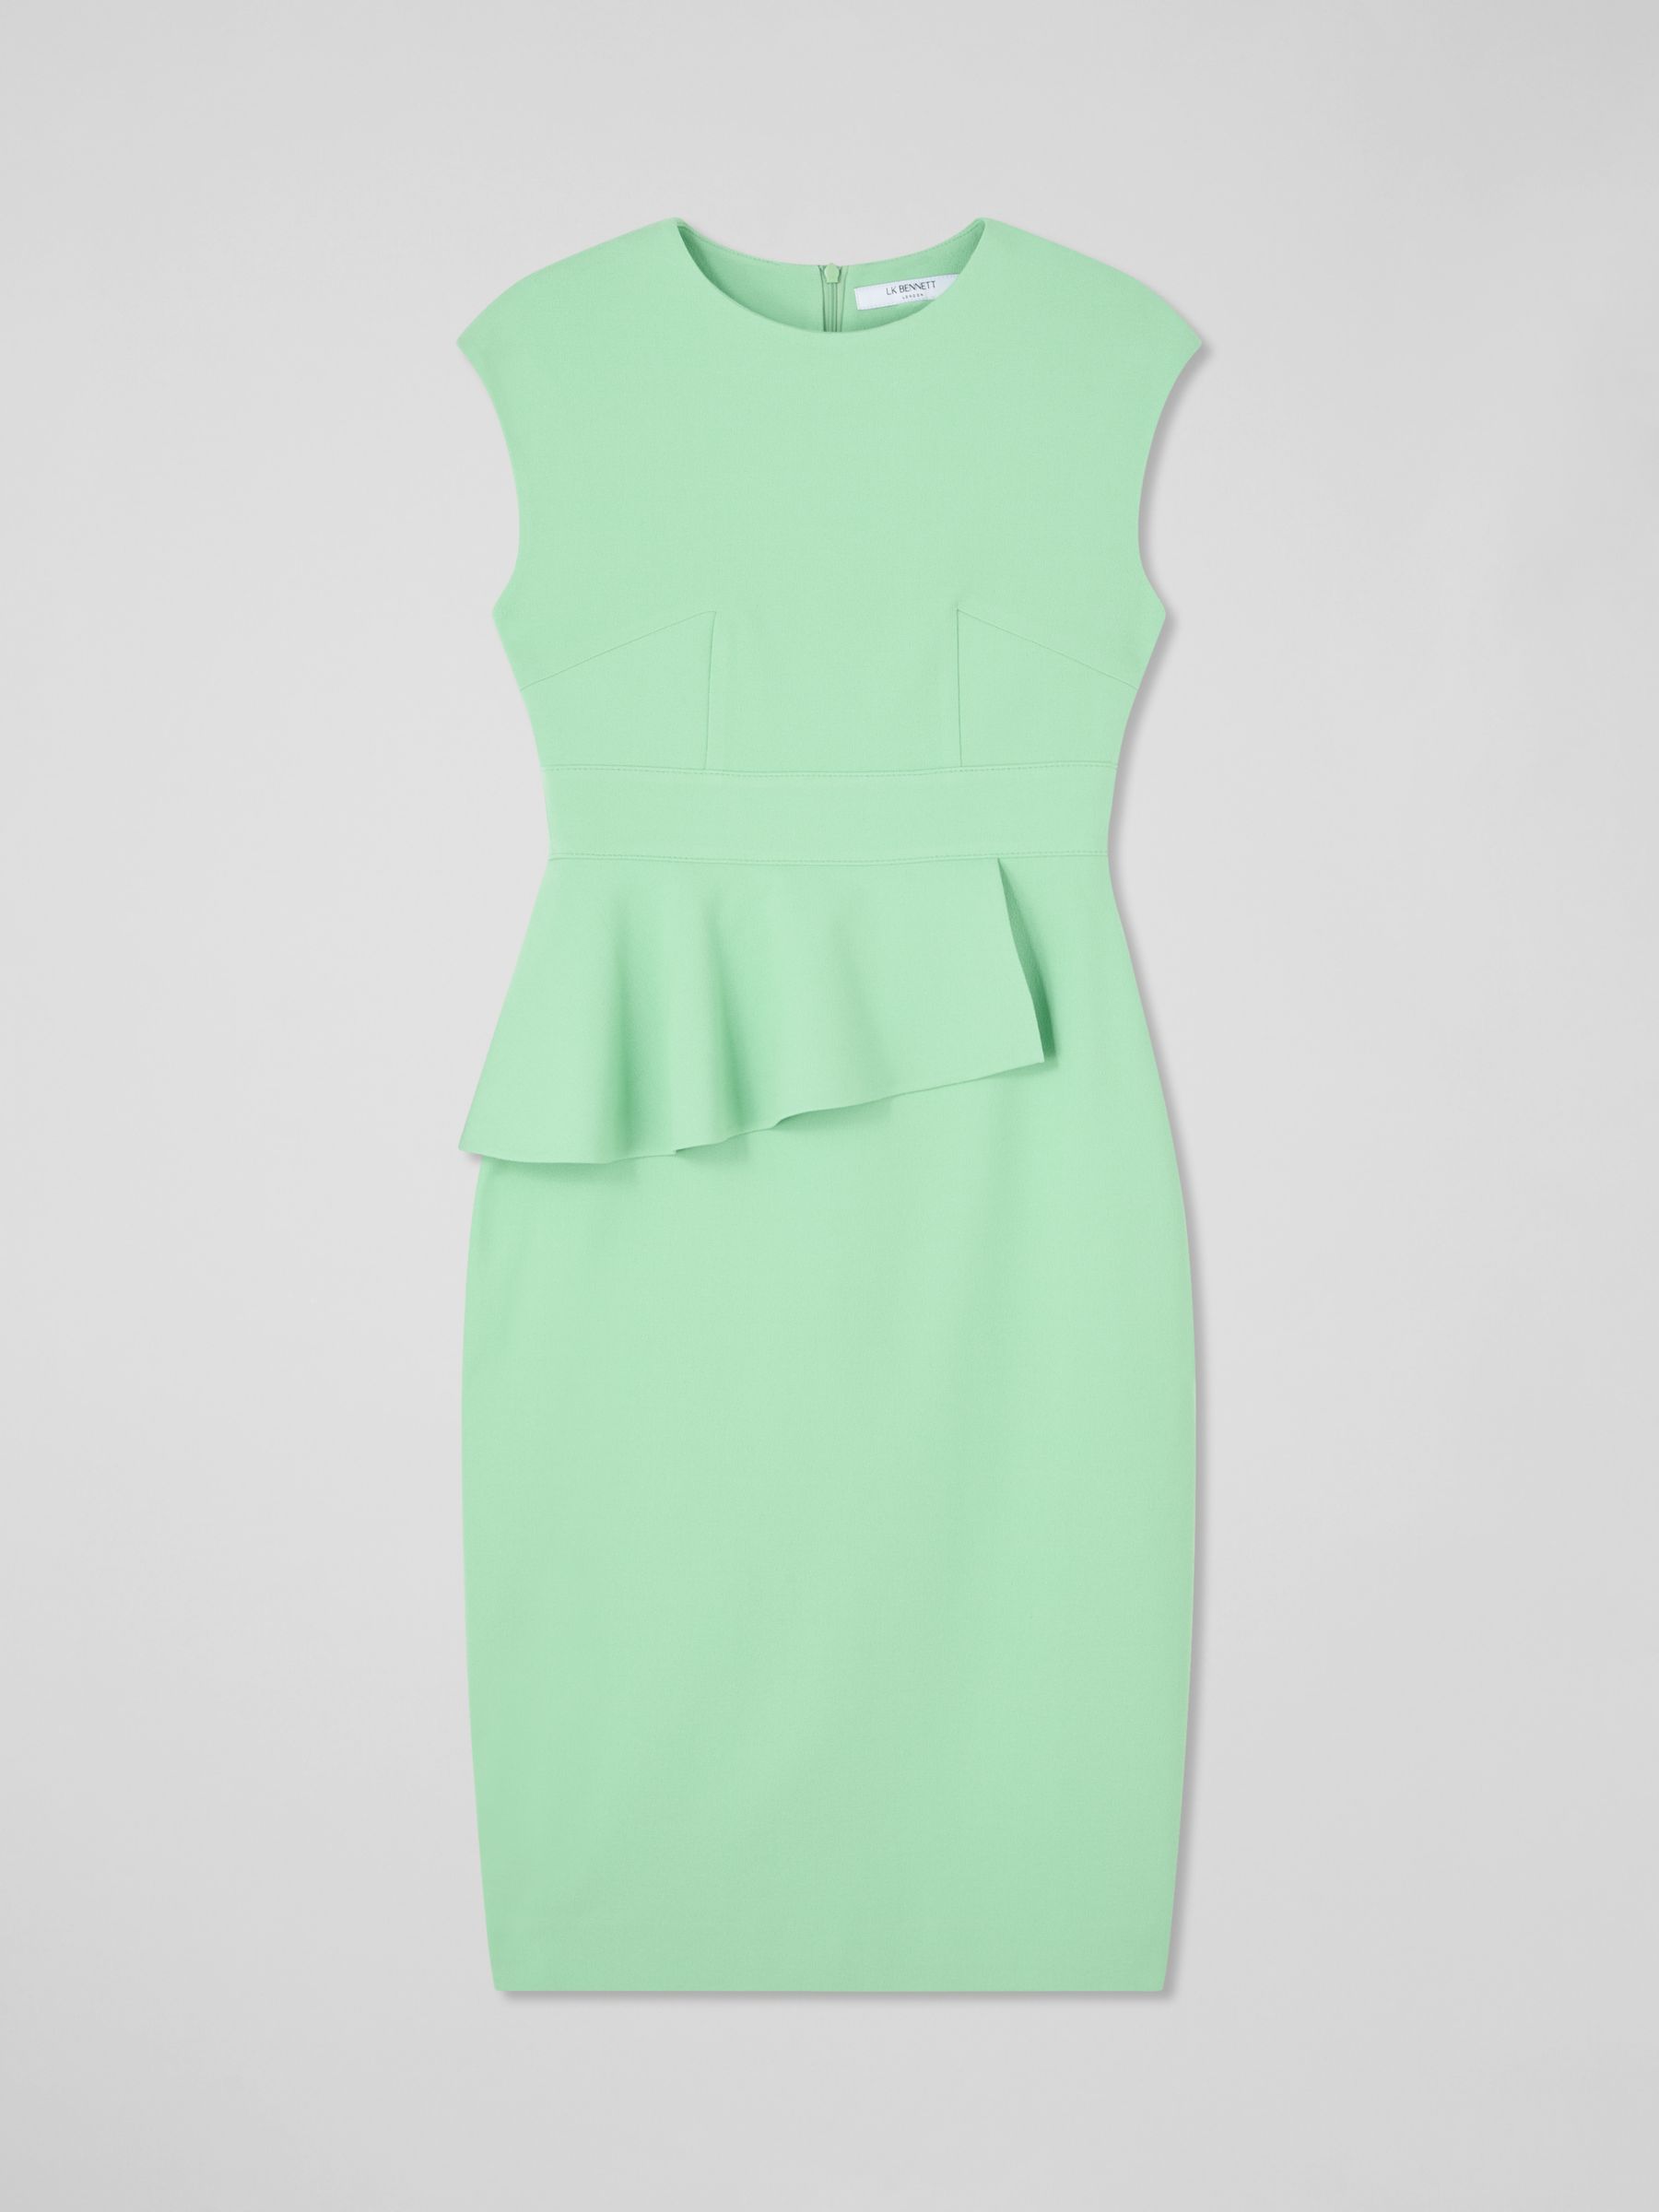 L.K.Bennett Petite Mia Ruffle Midi Dress, Green, 6